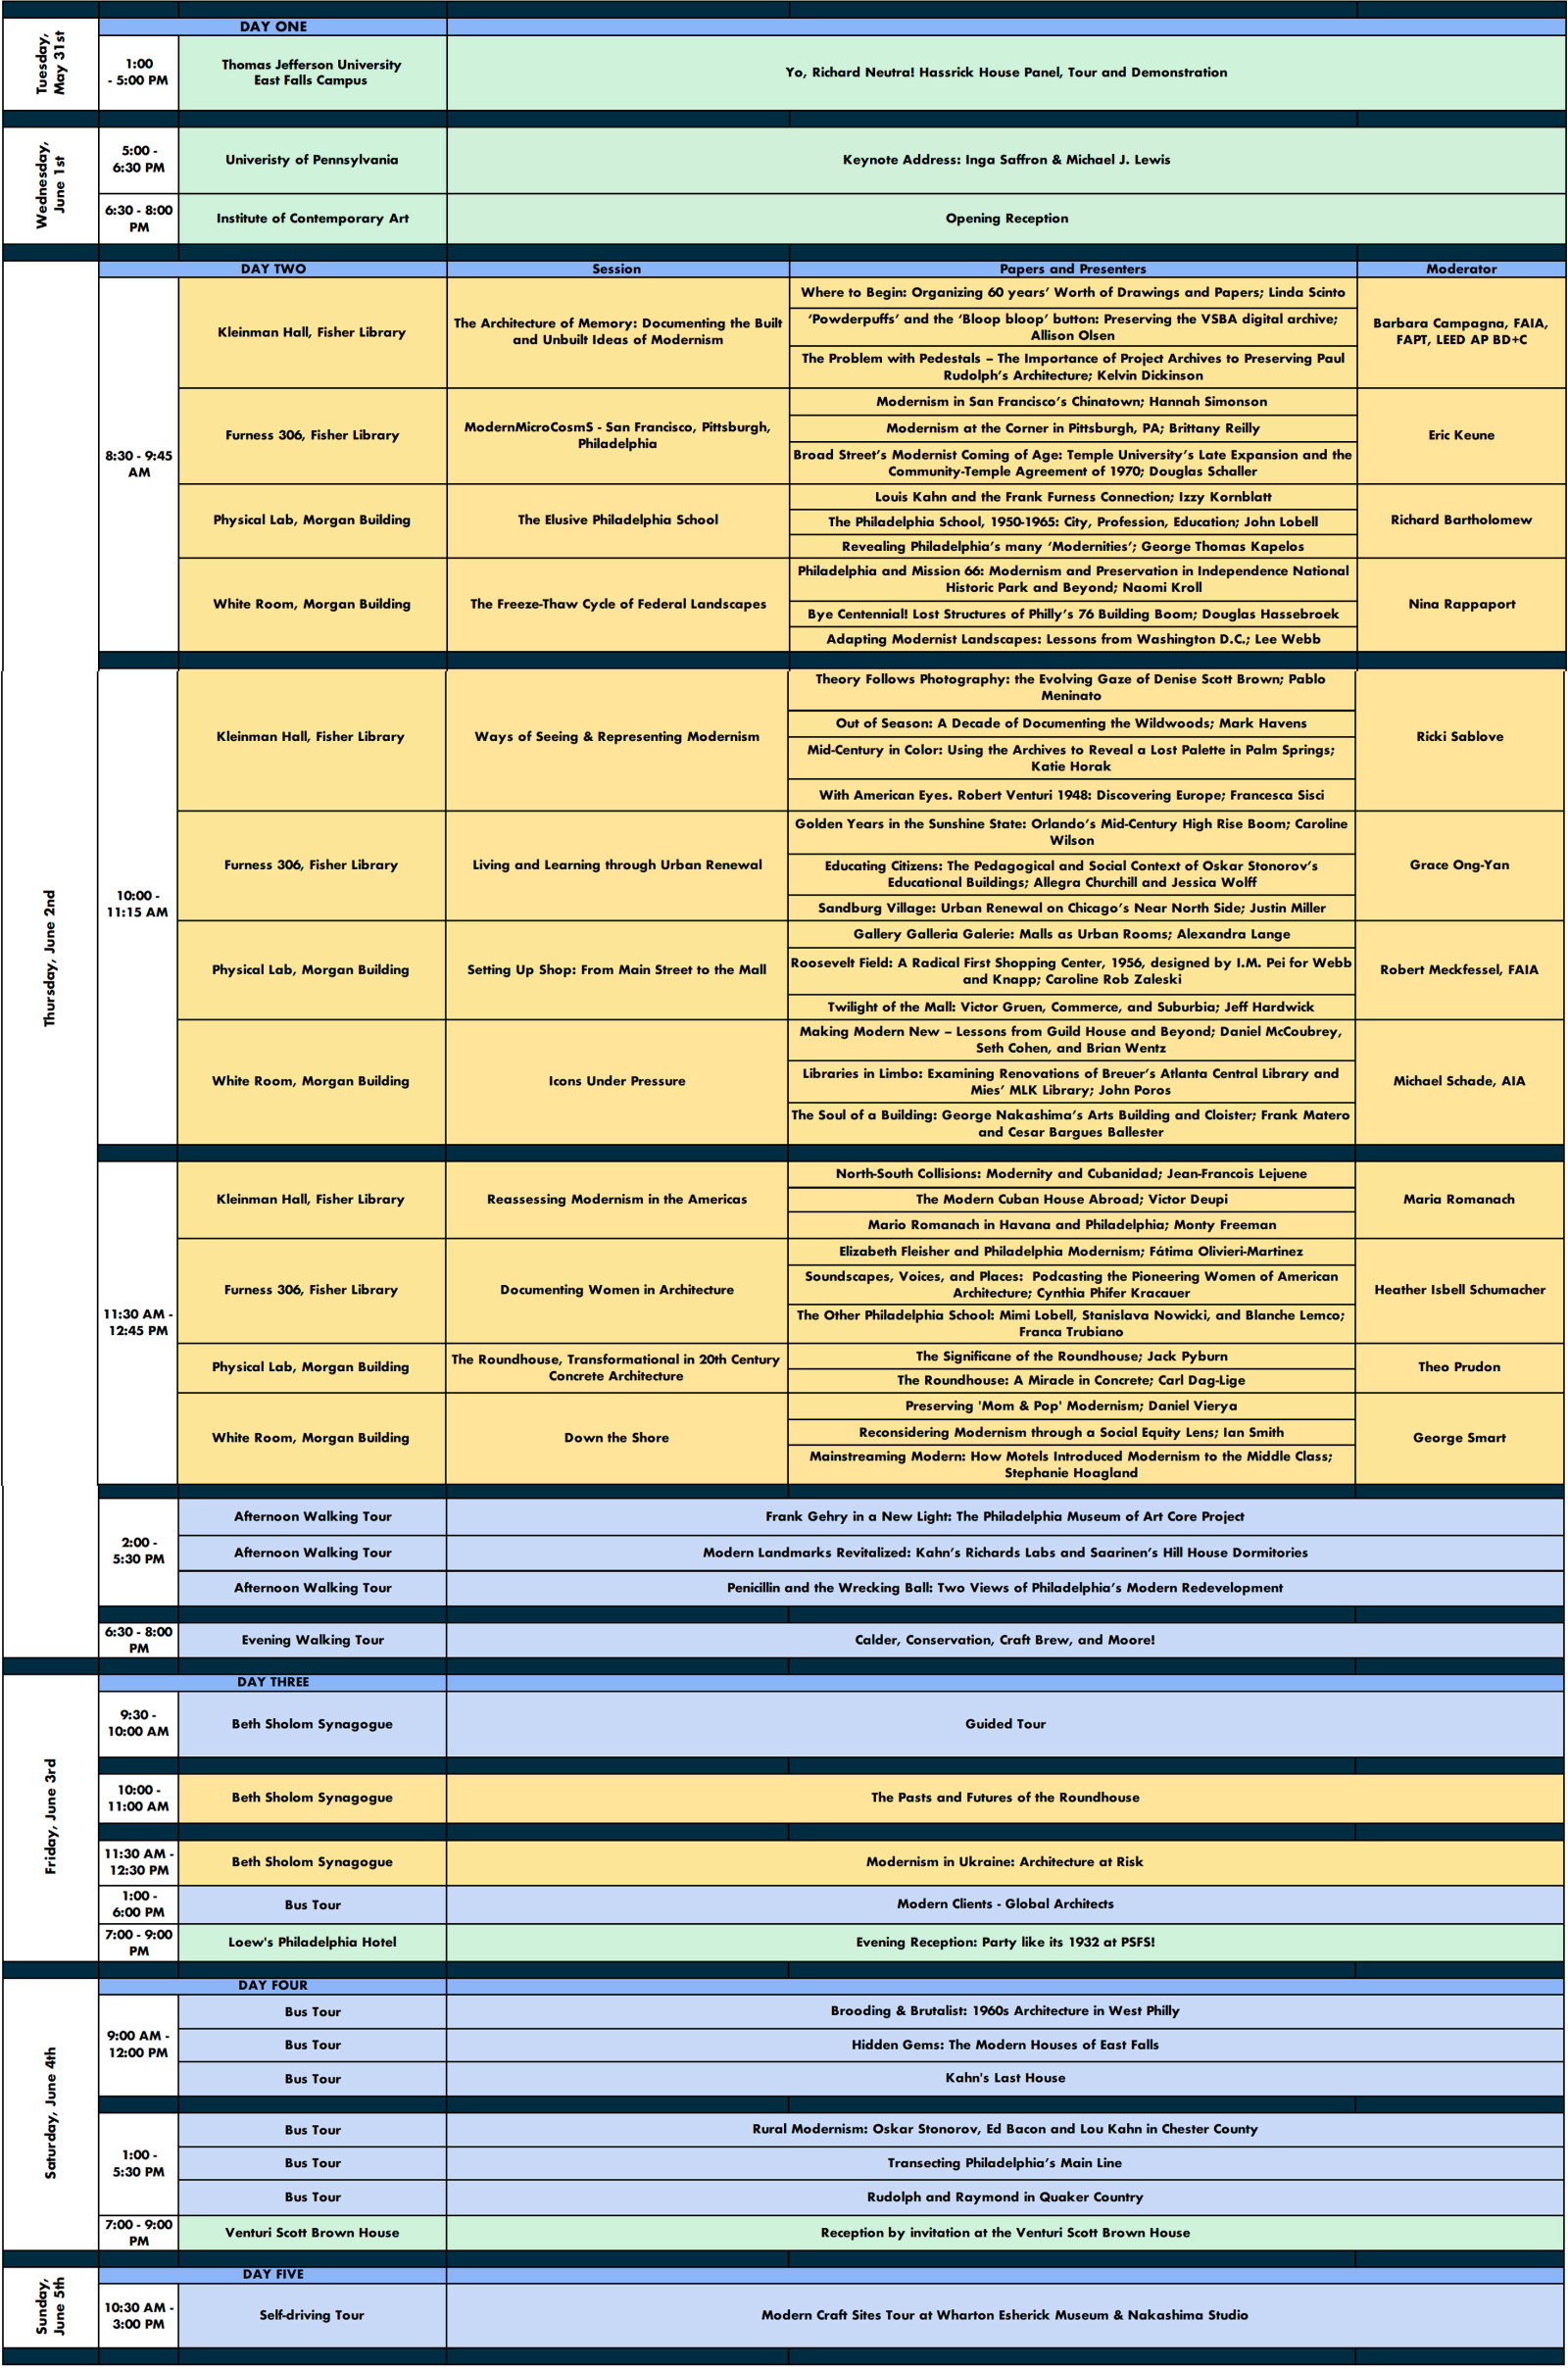 Symposium schedule